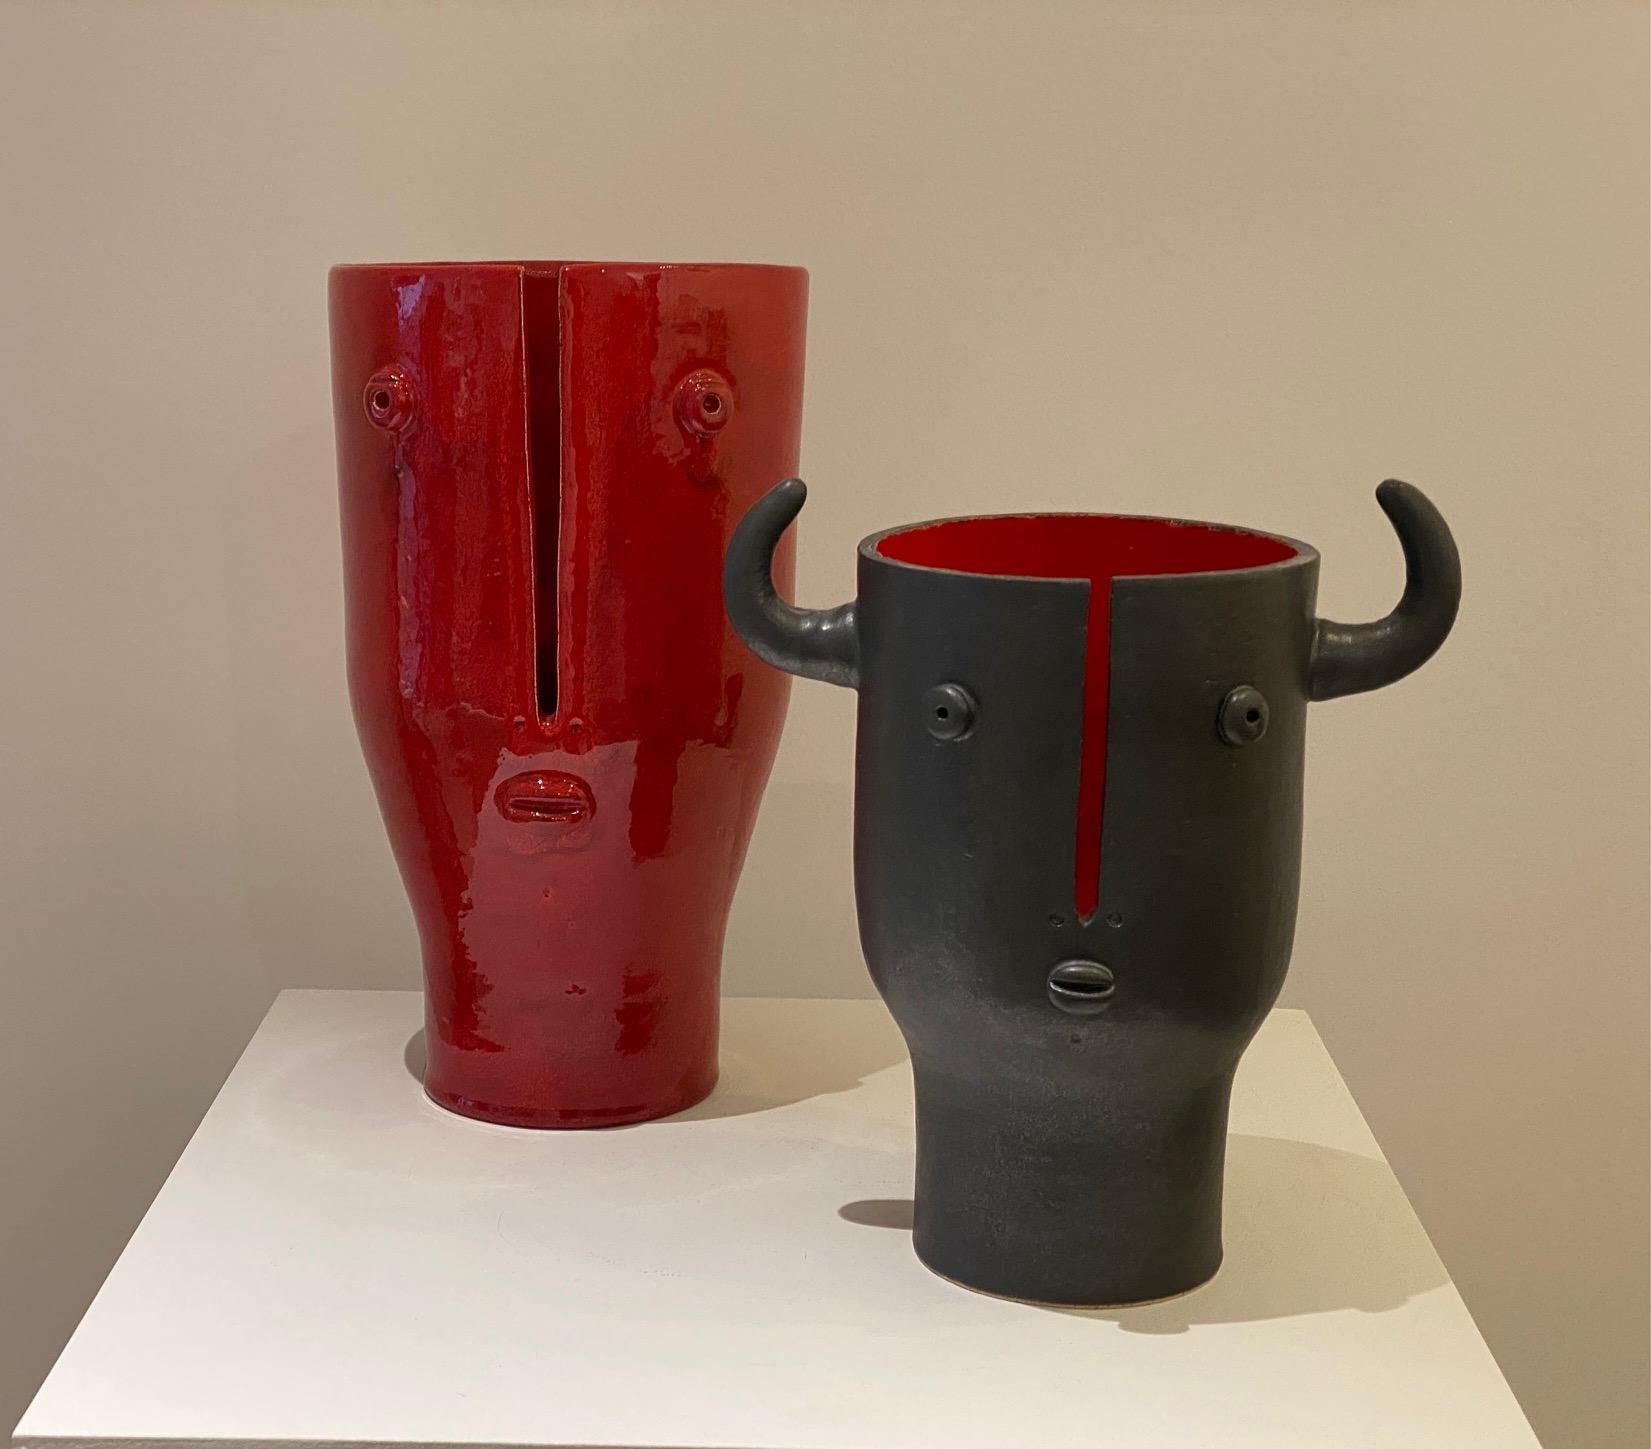 Shiny Red Ceramic Vase 